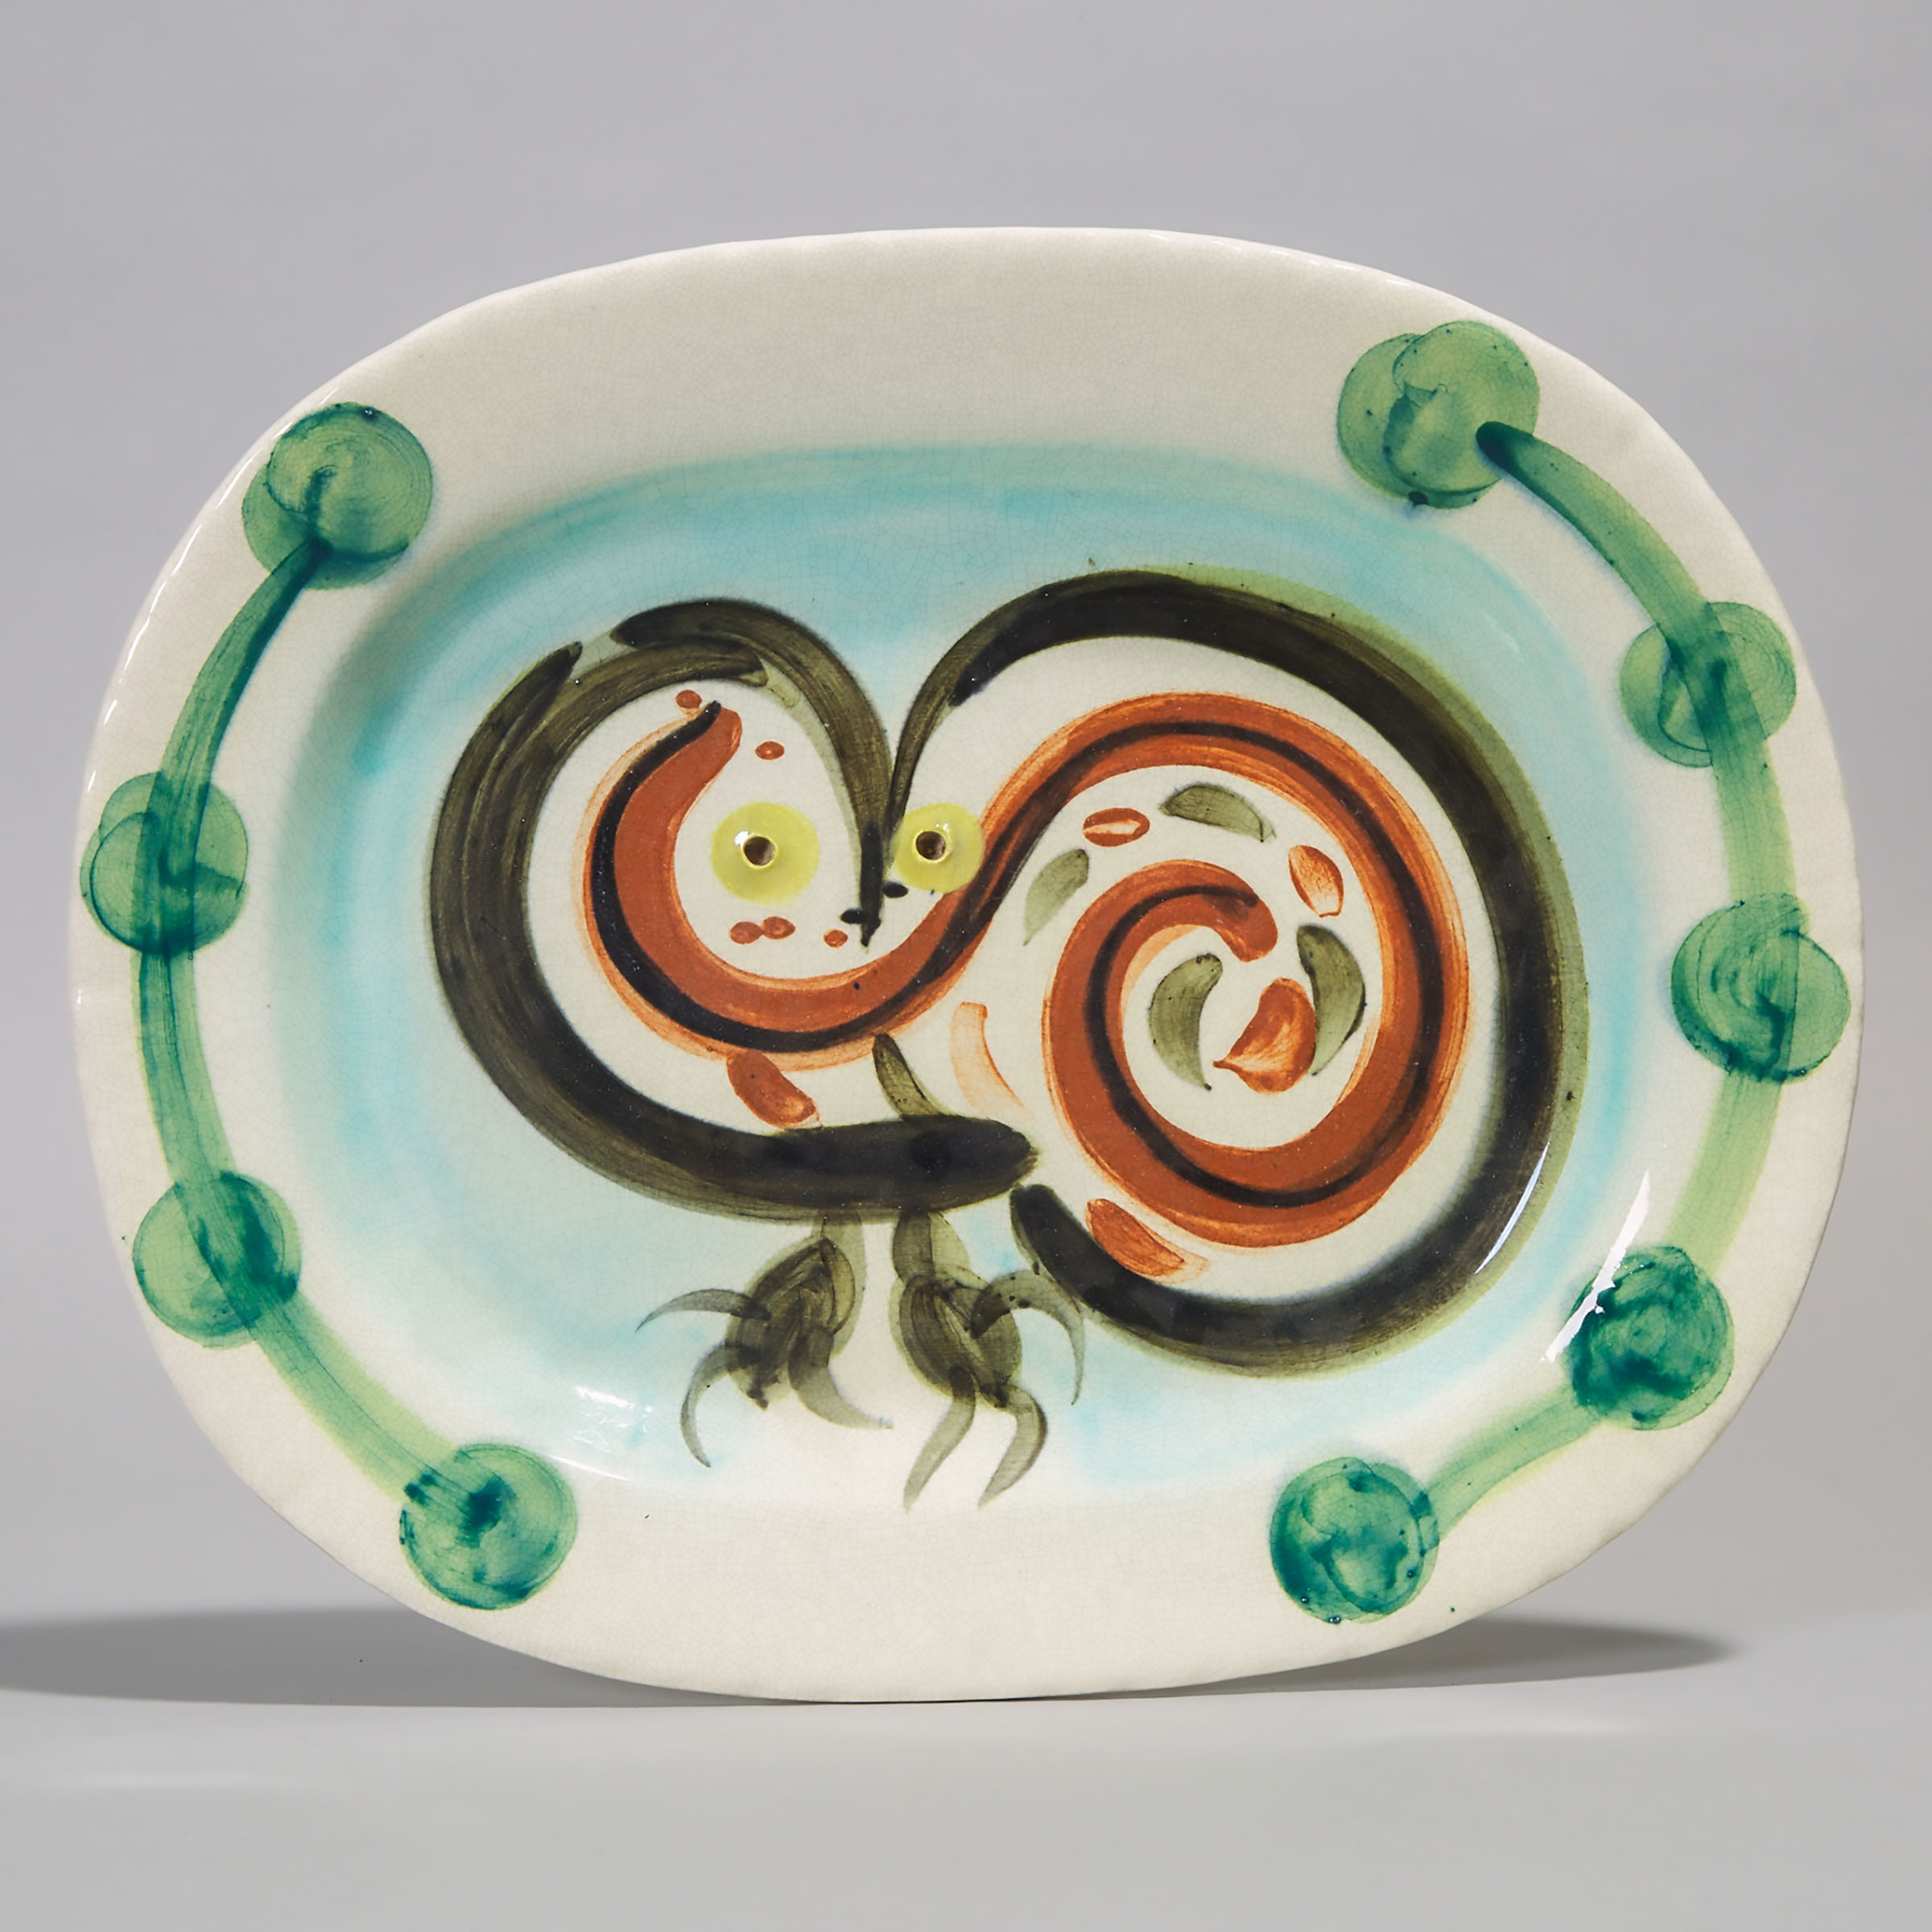 ‘Chouette’ (Wood Owl), Pablo Picasso (1881-1973), Ceramic Platter, 71/200, c.1948